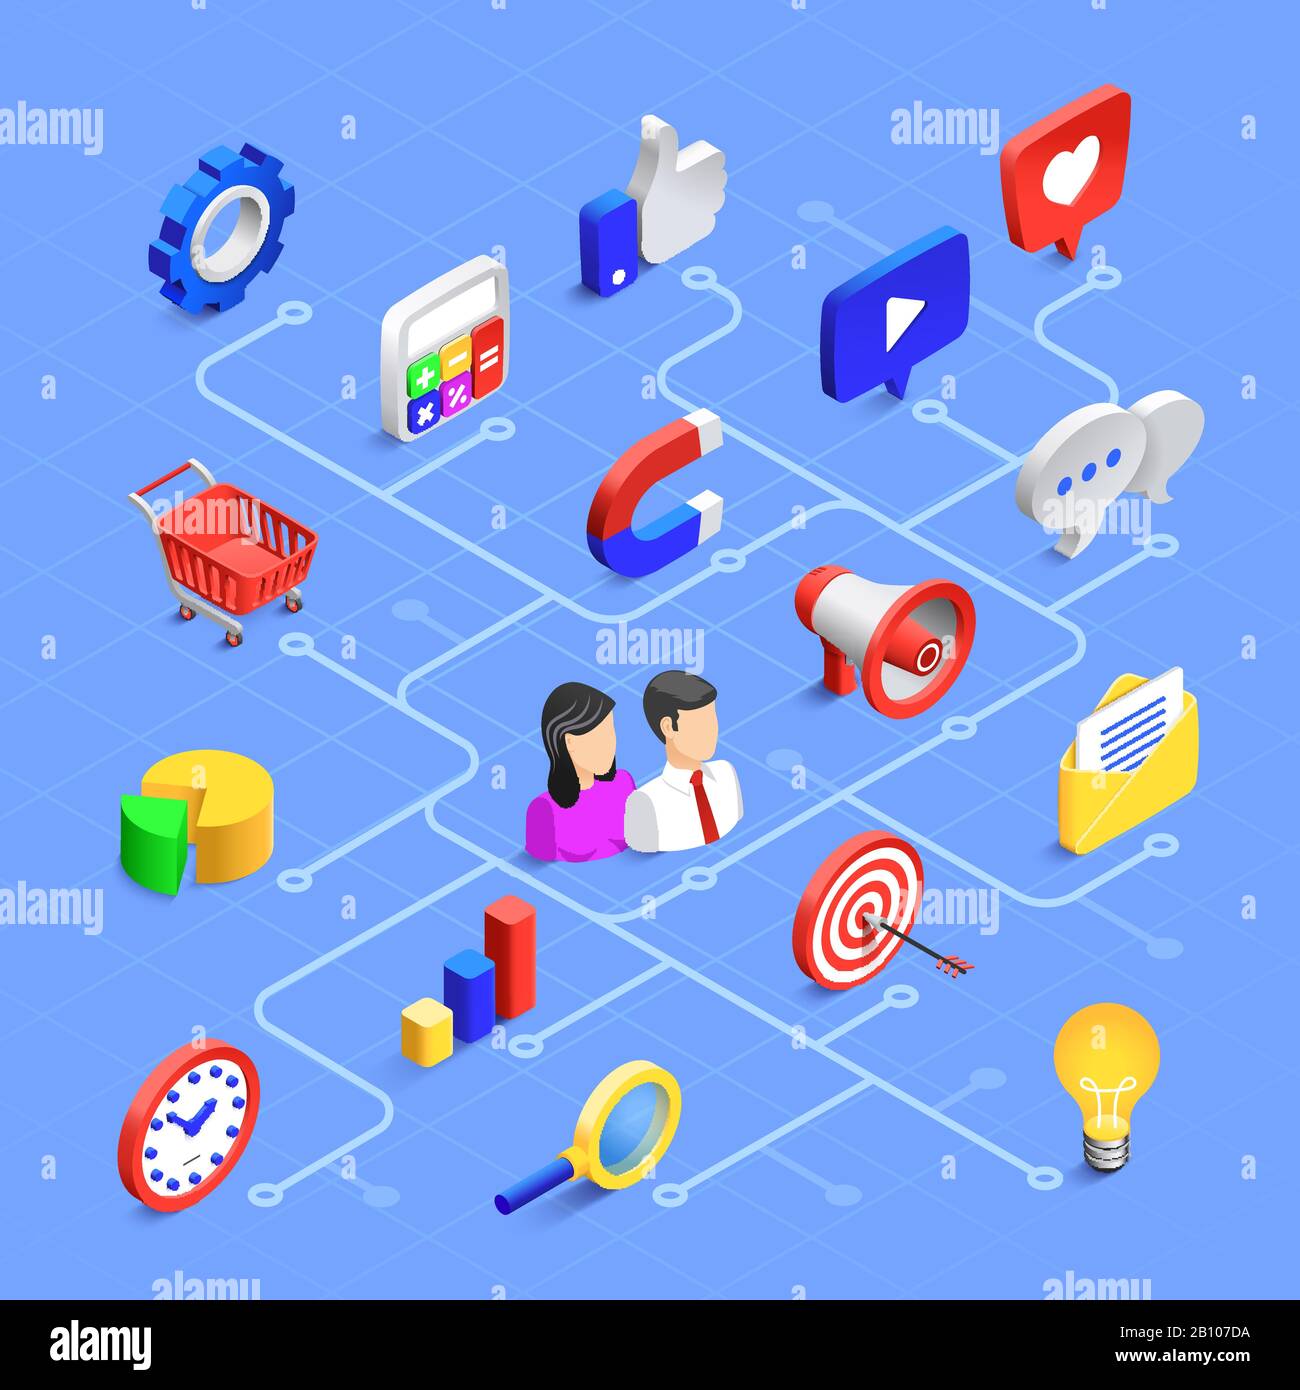 Isometrische Symbole für soziale Medien. Digitale Marketingkommunikation, Multimedia-Inhalte oder Informationsaustausch. Vector 3d-Symbolsatz Stock Vektor